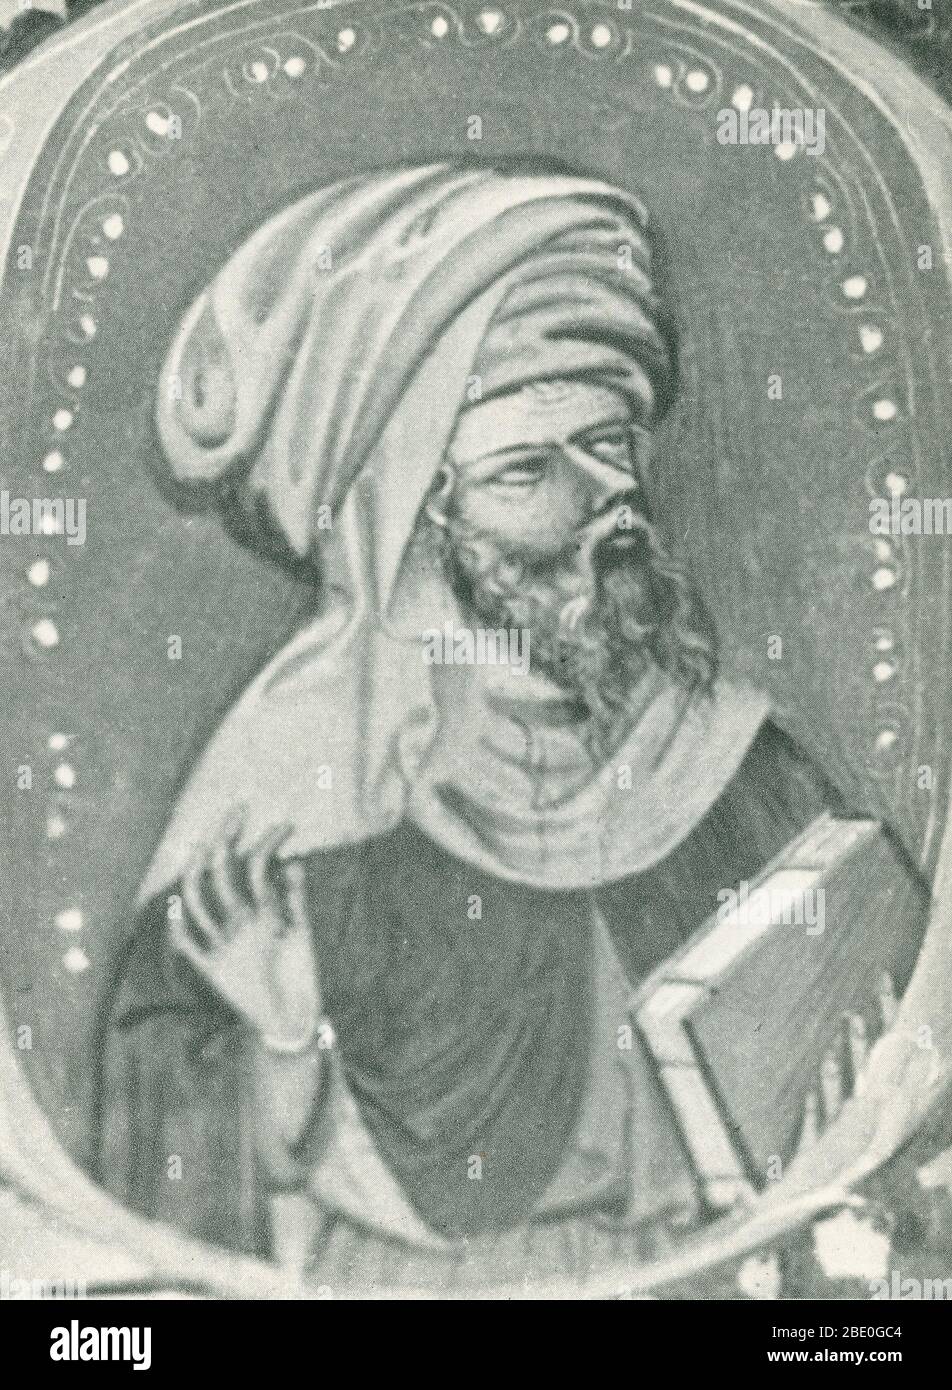 Abu l-Walid Muhammad bin 'Ahmad bin RUSD o por su nombre latinizado Averroes (14 de abril de 1126 - 10 de diciembre de 1198) fue un polemato musulmán al-Andalus, un maestro de filosofía aristotélica, filosofía islámica, teología islámica, ley y jurisprudencia Maliki, lógica, psicología, política y teoría de la música clásica andaluza, y las ciencias de la medicina, la astronomía, la geografía, las matemáticas, la física y la mecánica celeste. Fue muy considerado como un erudito legal de la escuela Maliki de derecho islámico. Tuvo un gran impacto en los círculos de Europa occidental y ha sido descrito como el "padre fundador de s Foto de stock